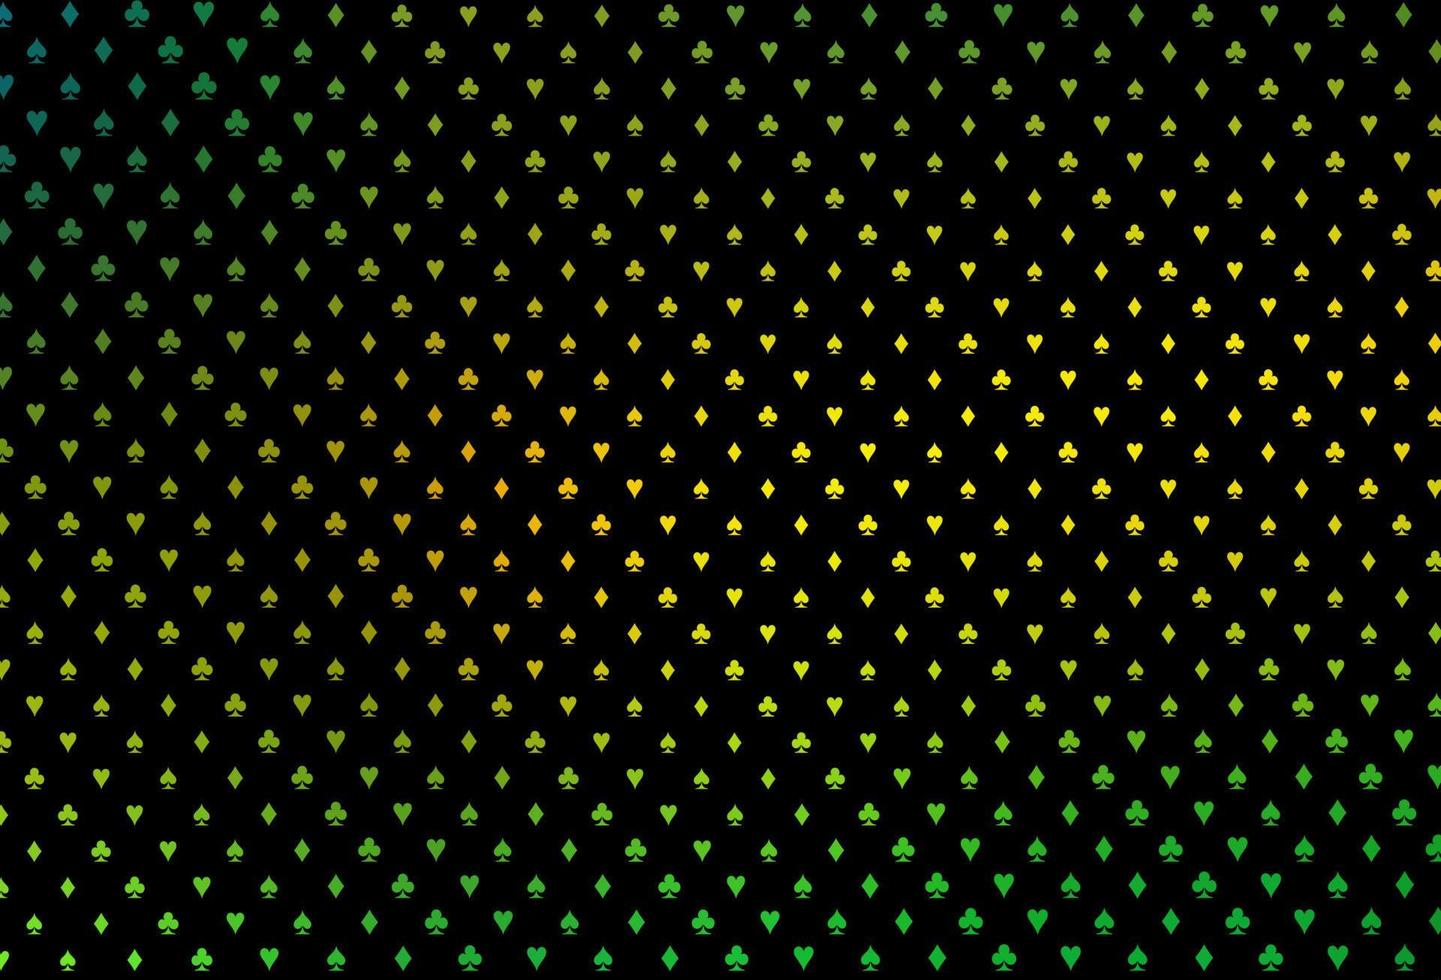 textura de vetor verde e amarelo escuro com cartas de jogar.